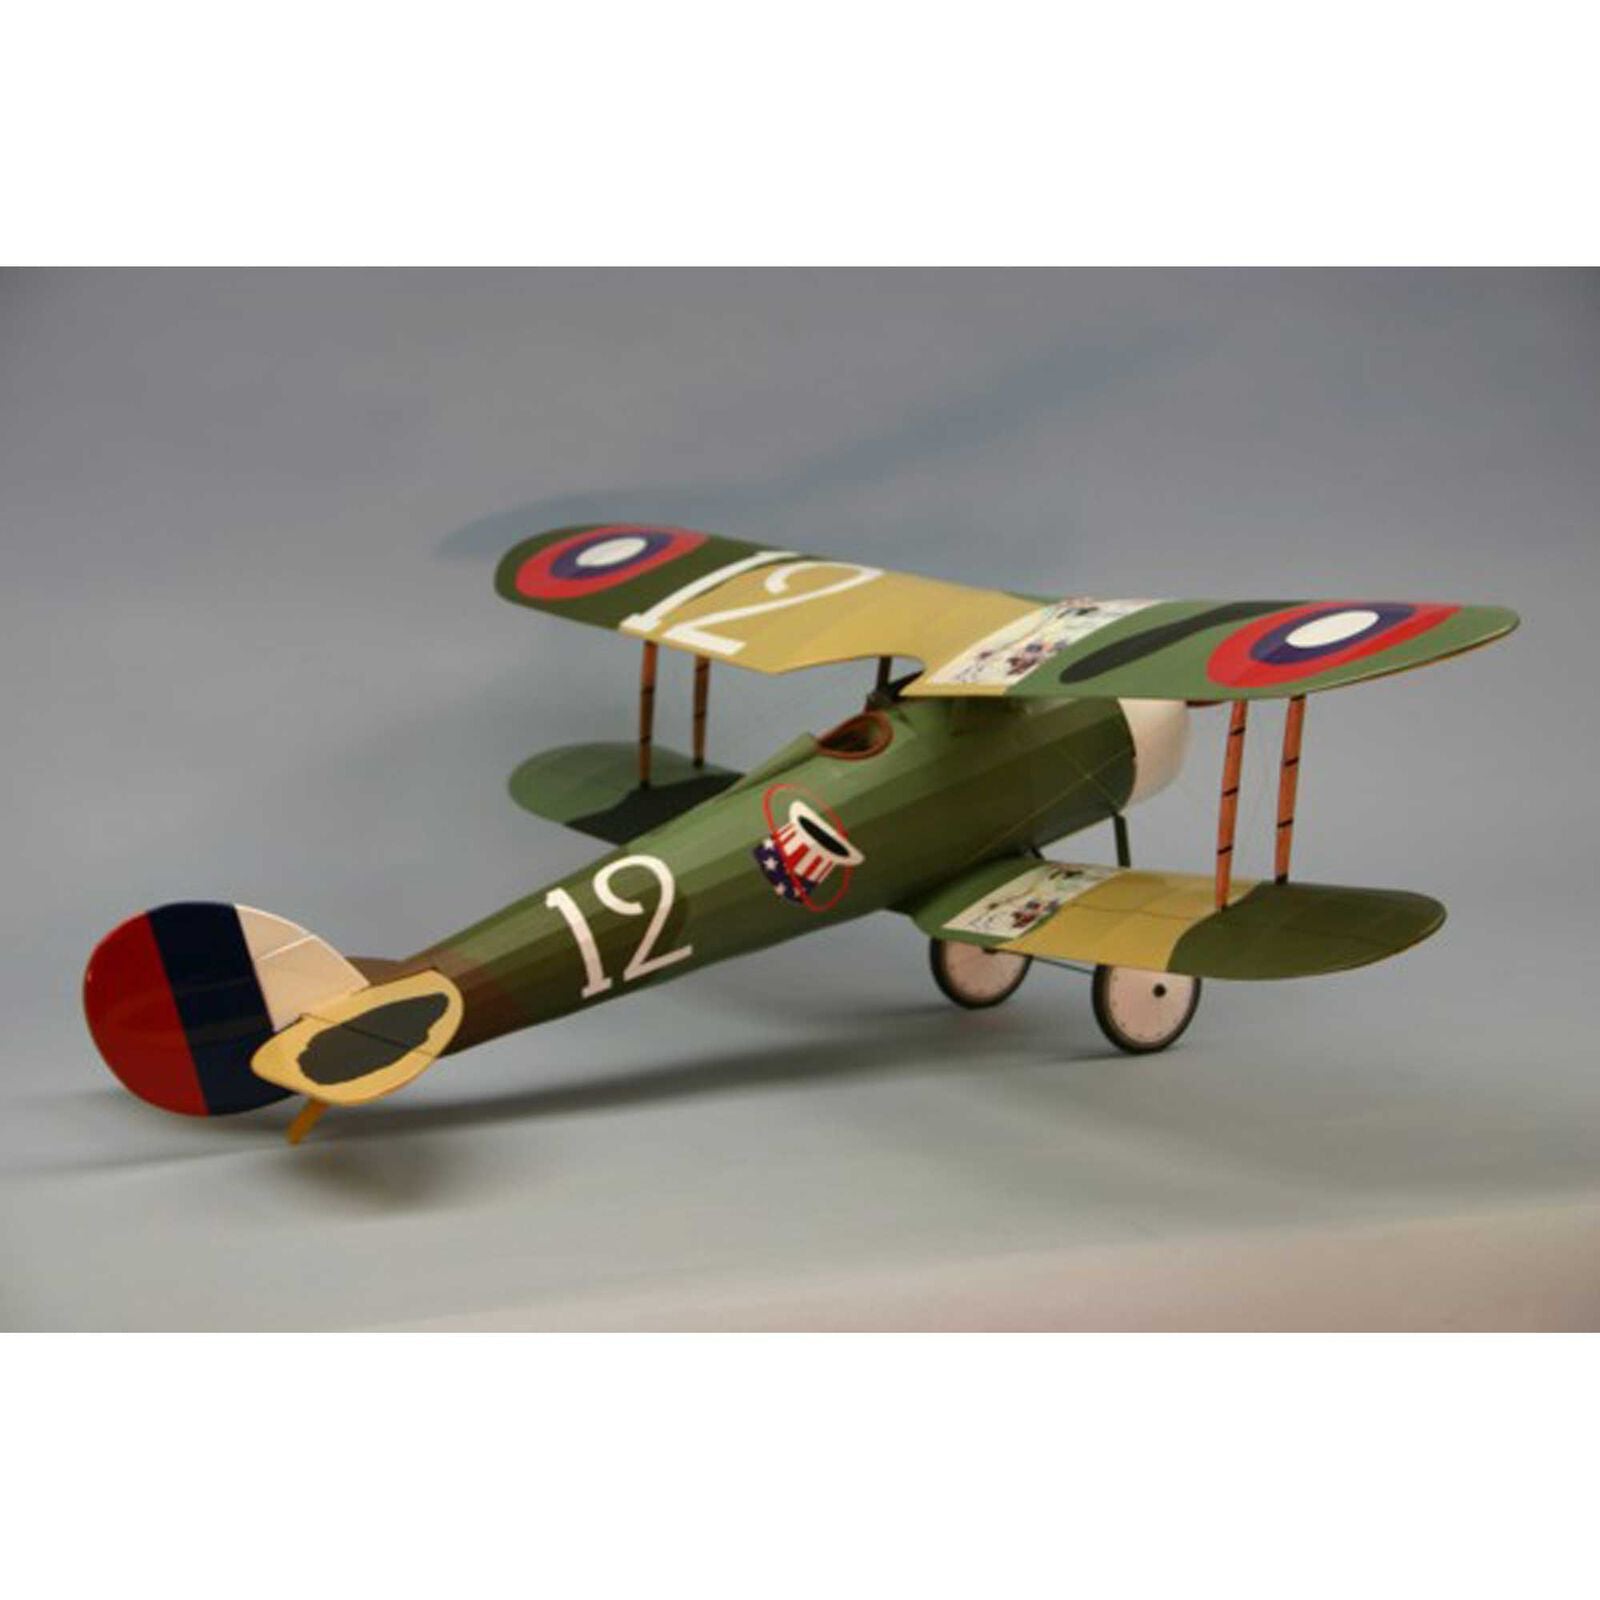 DUMAS 1819 Nieuport 28 WW1 Fighter Electric Kit, 35"